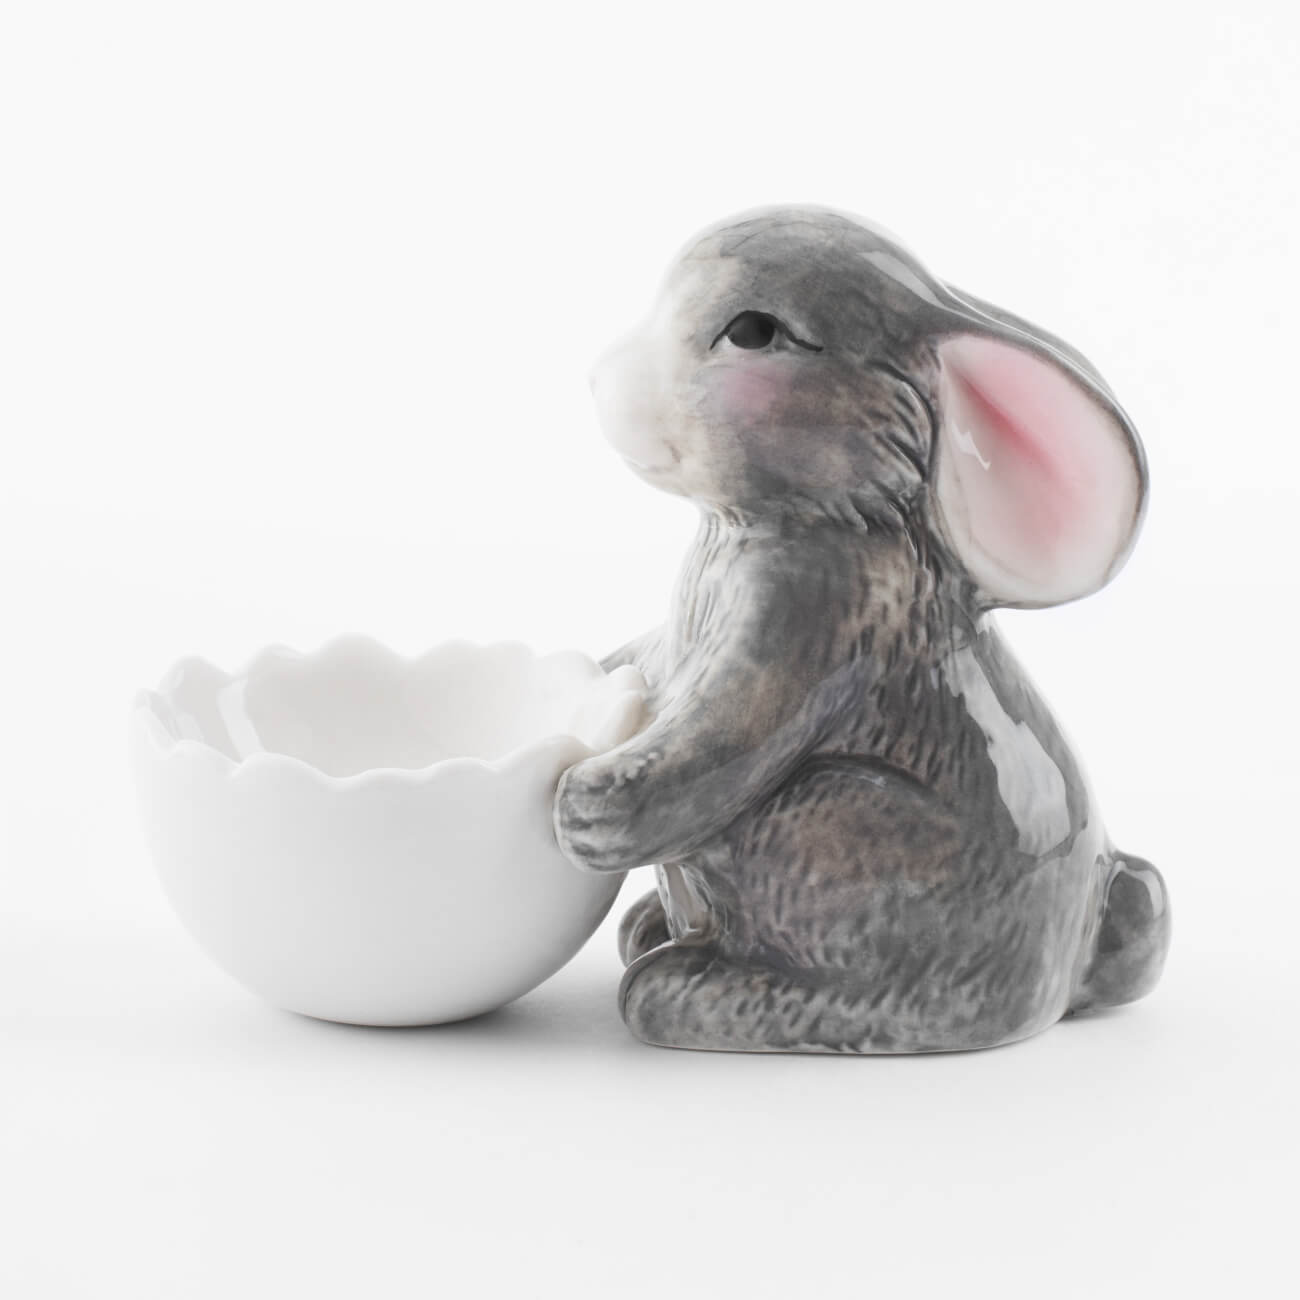 Подставка для яйца, 11 см, фарфор P, бело-серая, Кролик со скорлупой, Pure Easter подвеска пасхальное яйцо 10 см пенопласт кролик в ах easter